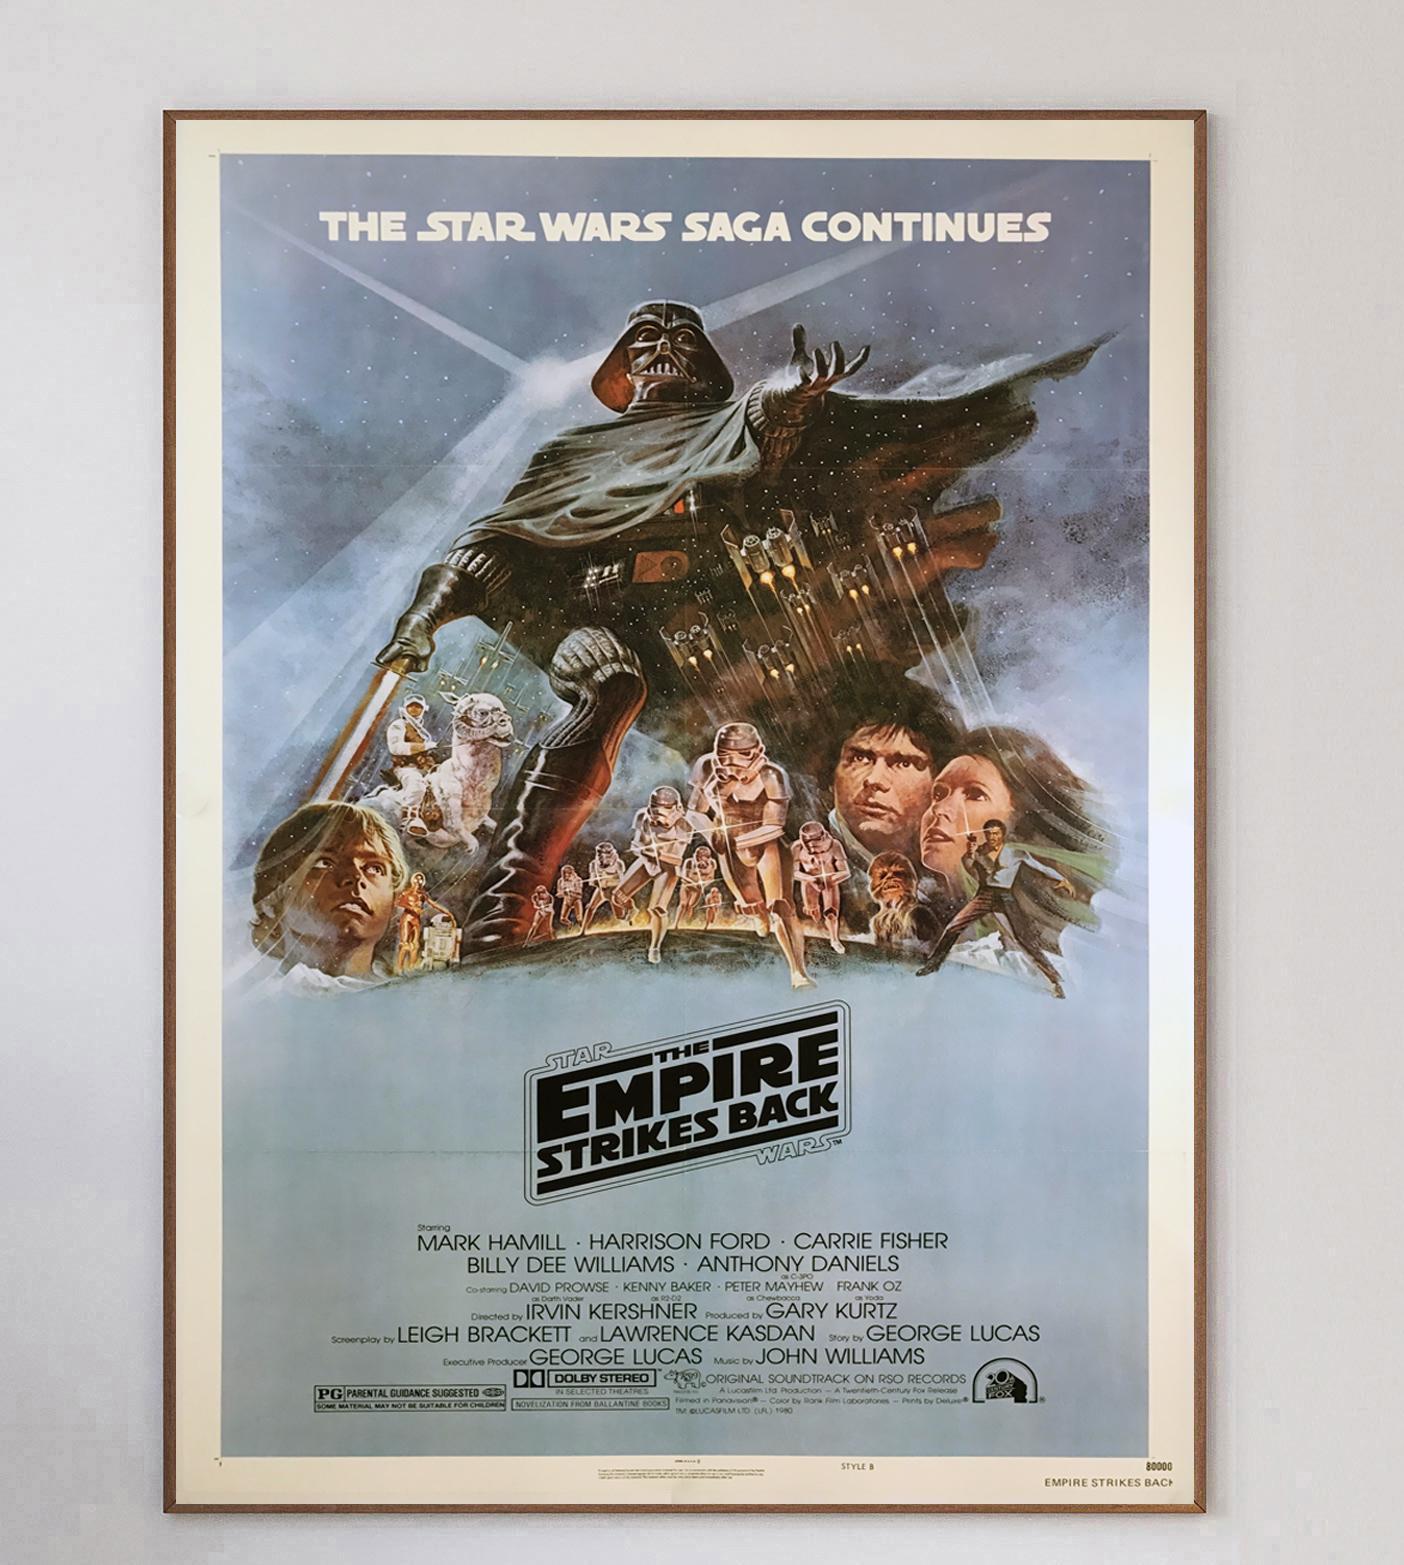 Largement considérée comme le plus beau design de la série Star Wars, cette affiche originale 